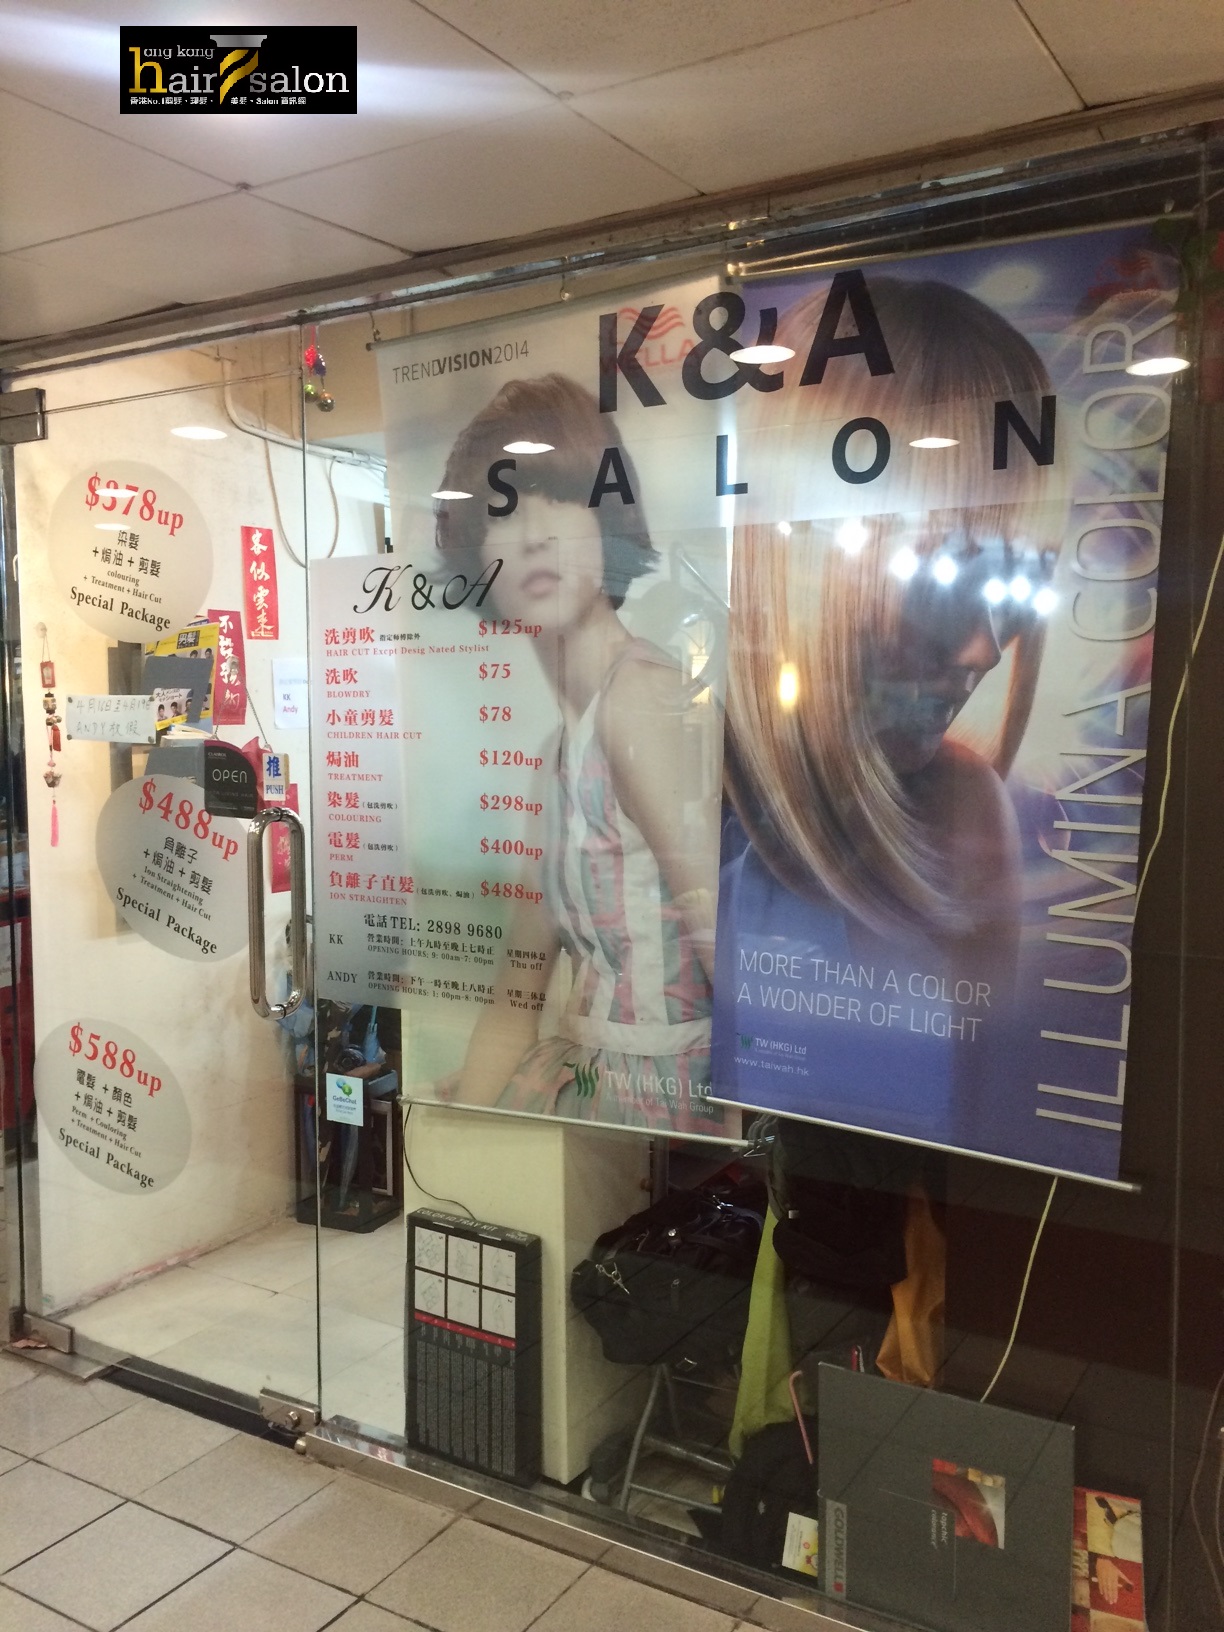 Hair Colouring: K&A Salon